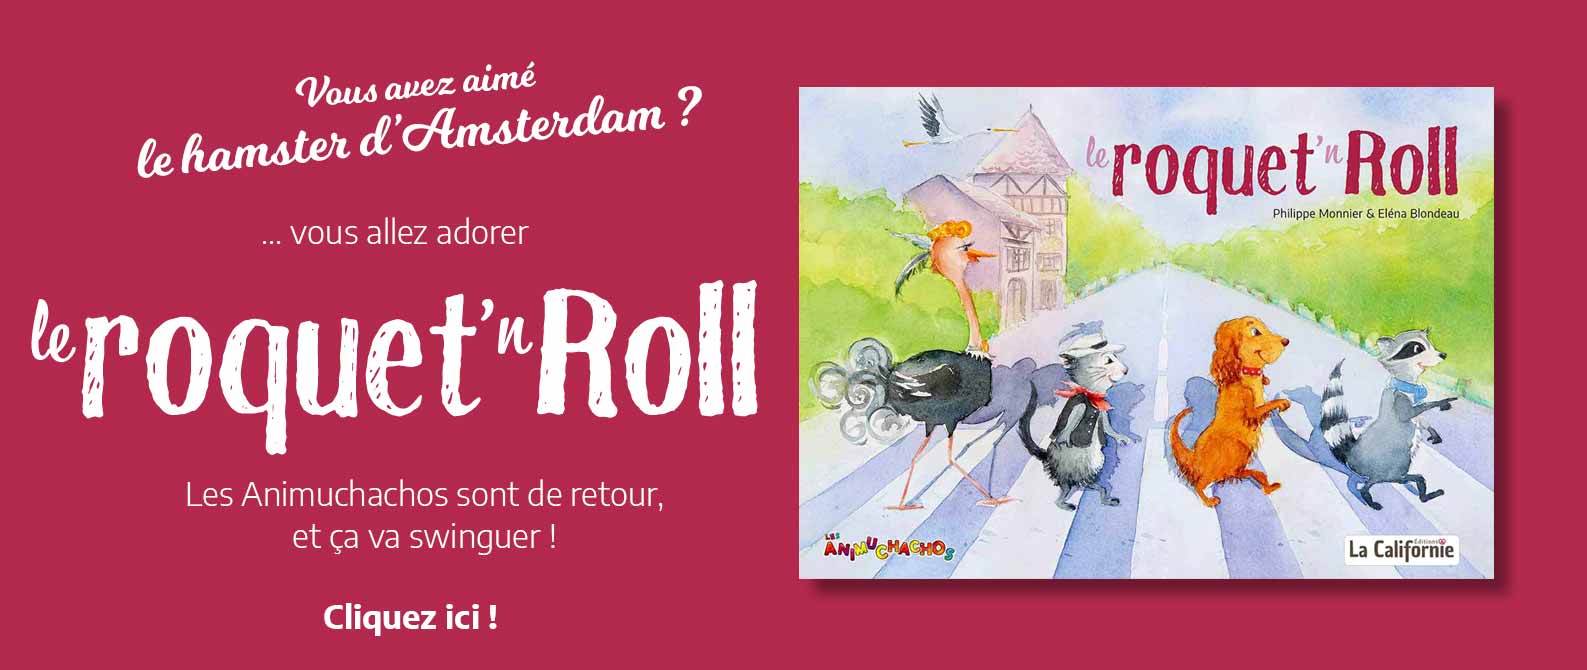 Le roquet'n roll est le second album des Animuchachos, écrit par Philippe Monnier et illustré par Eléna Blondeau.